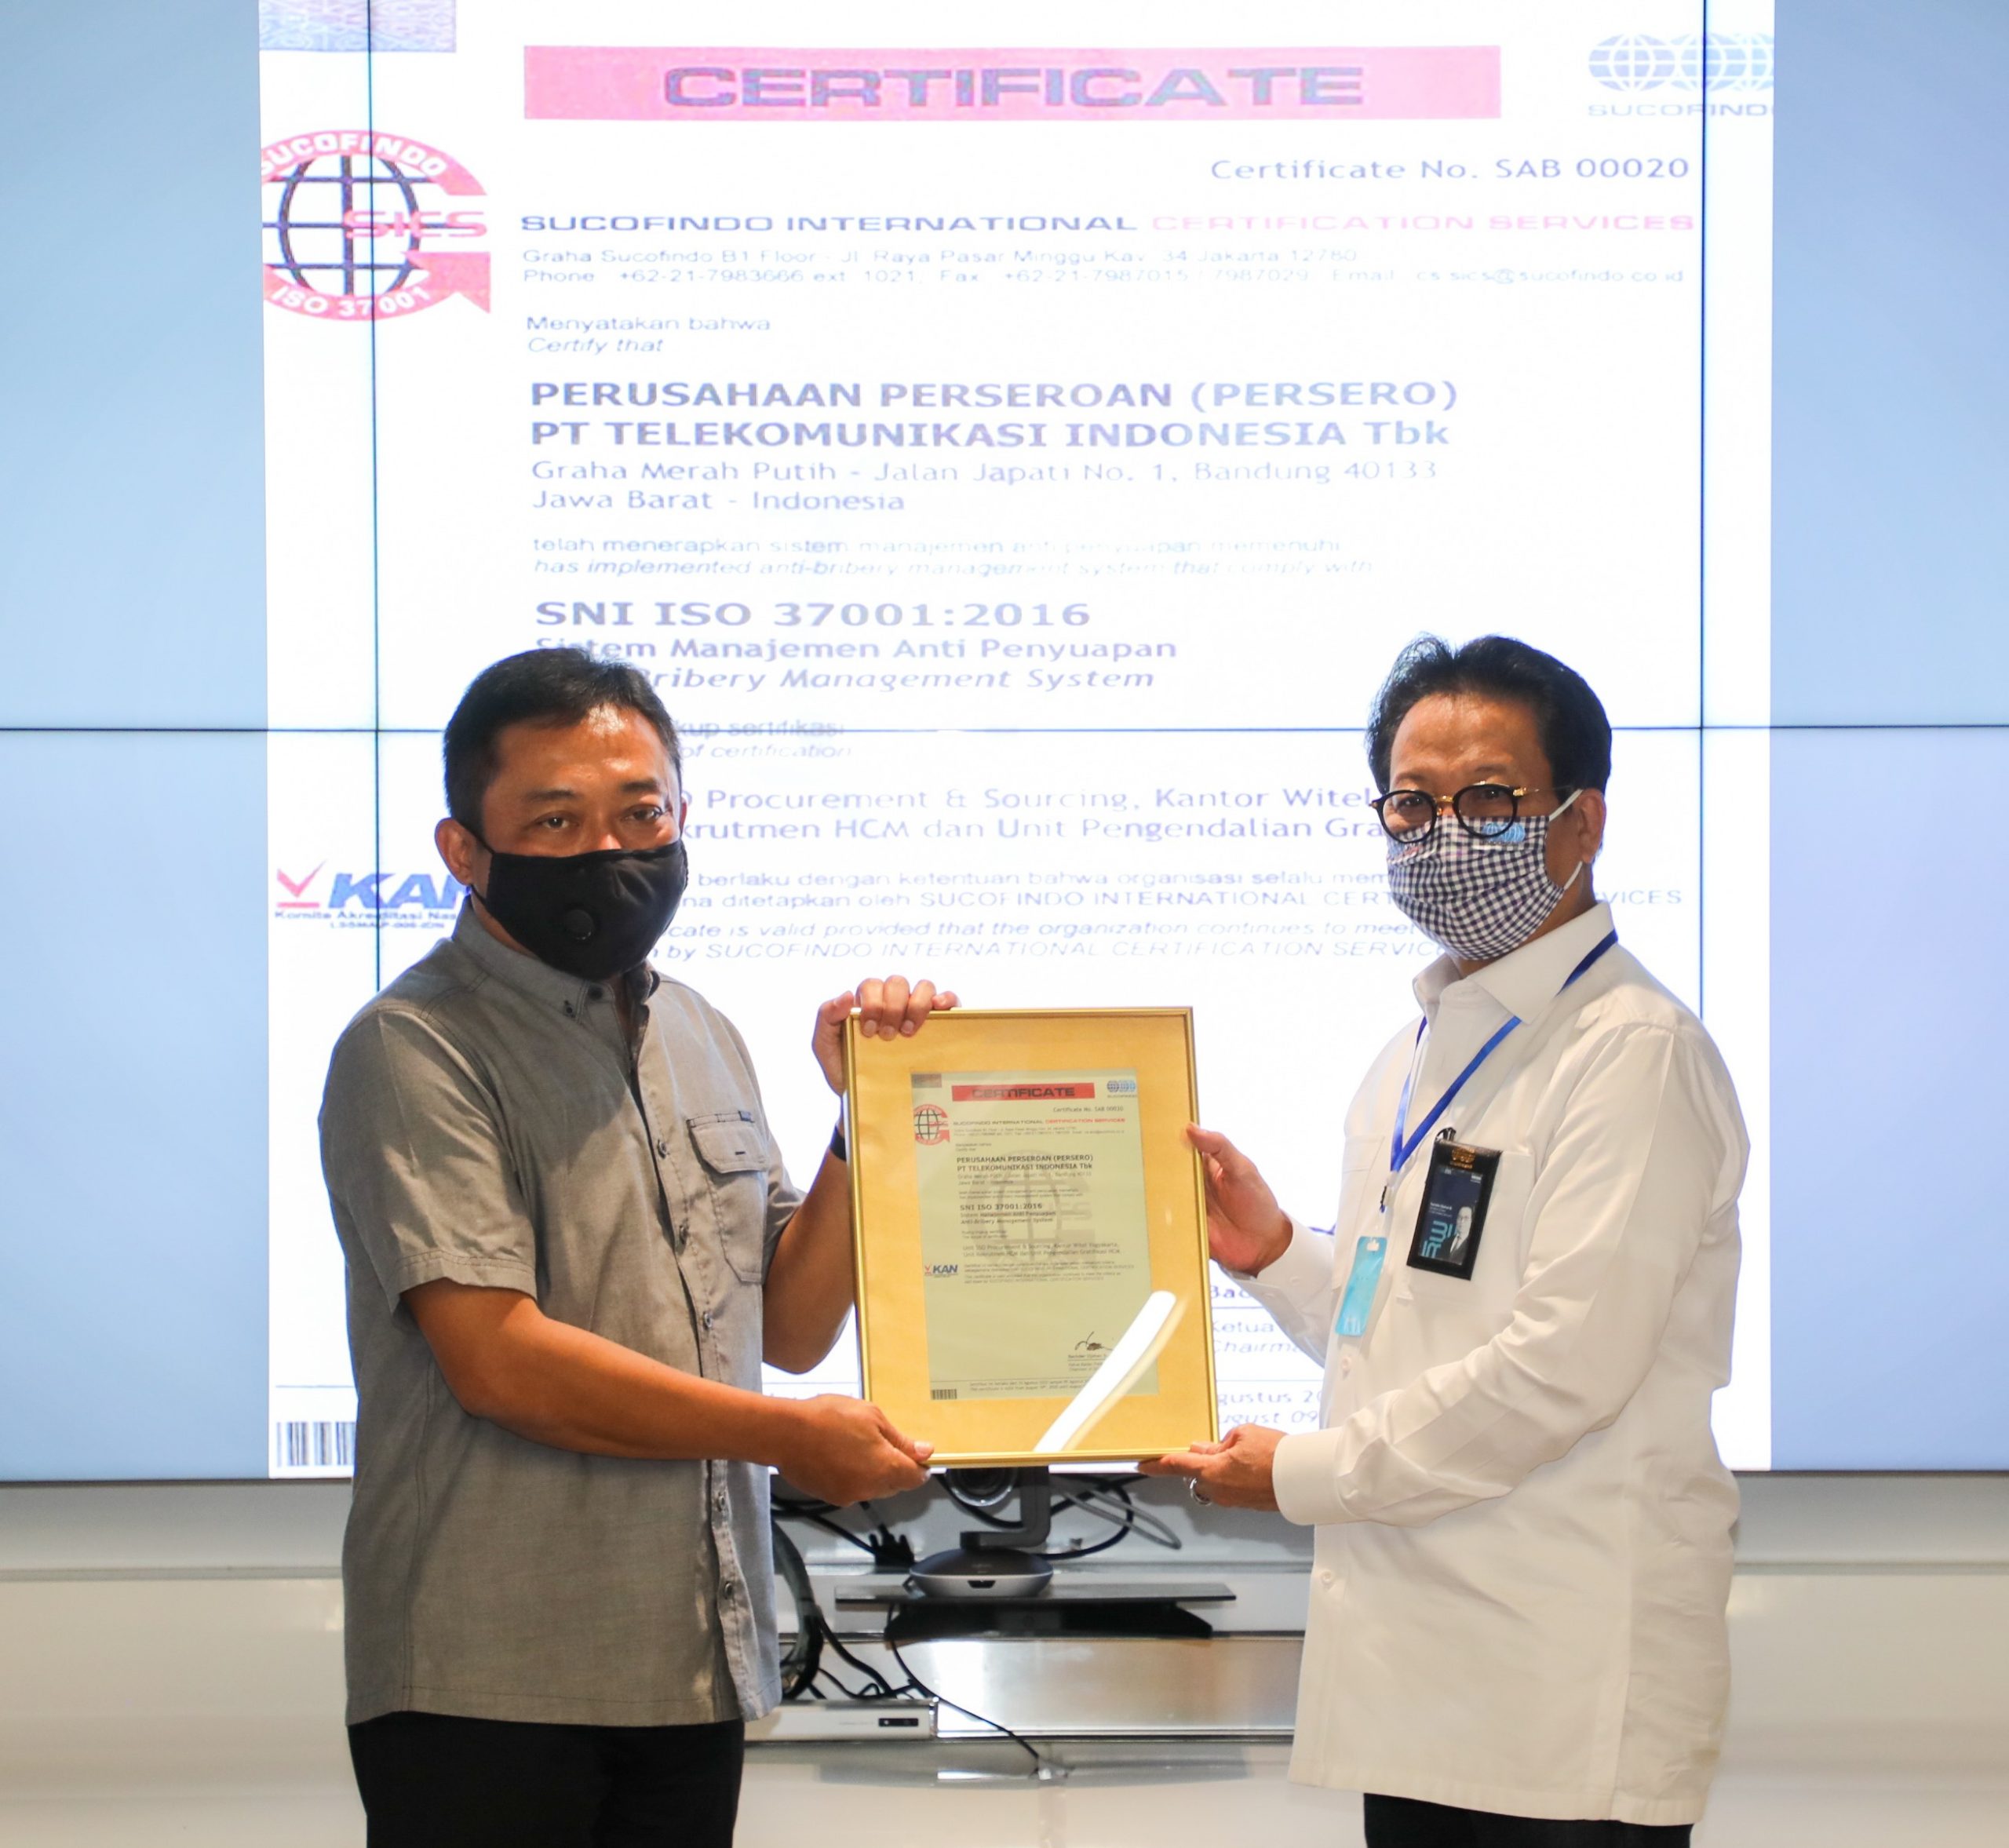 Direktur Utama Telkom Ririek Adriansyah (kiri) menerima sertifikat ISO 37001:2016 setelah Telkom menjalani sertifikasi penerapan Sistem Manajemen Anti Penyuapan sesuai dengan standar internasional, yang diserahkan oleh Direktur Utama Sucofindo Bachder Djohan Buddin (kanan) di Jakarta, Kamis (13/8).